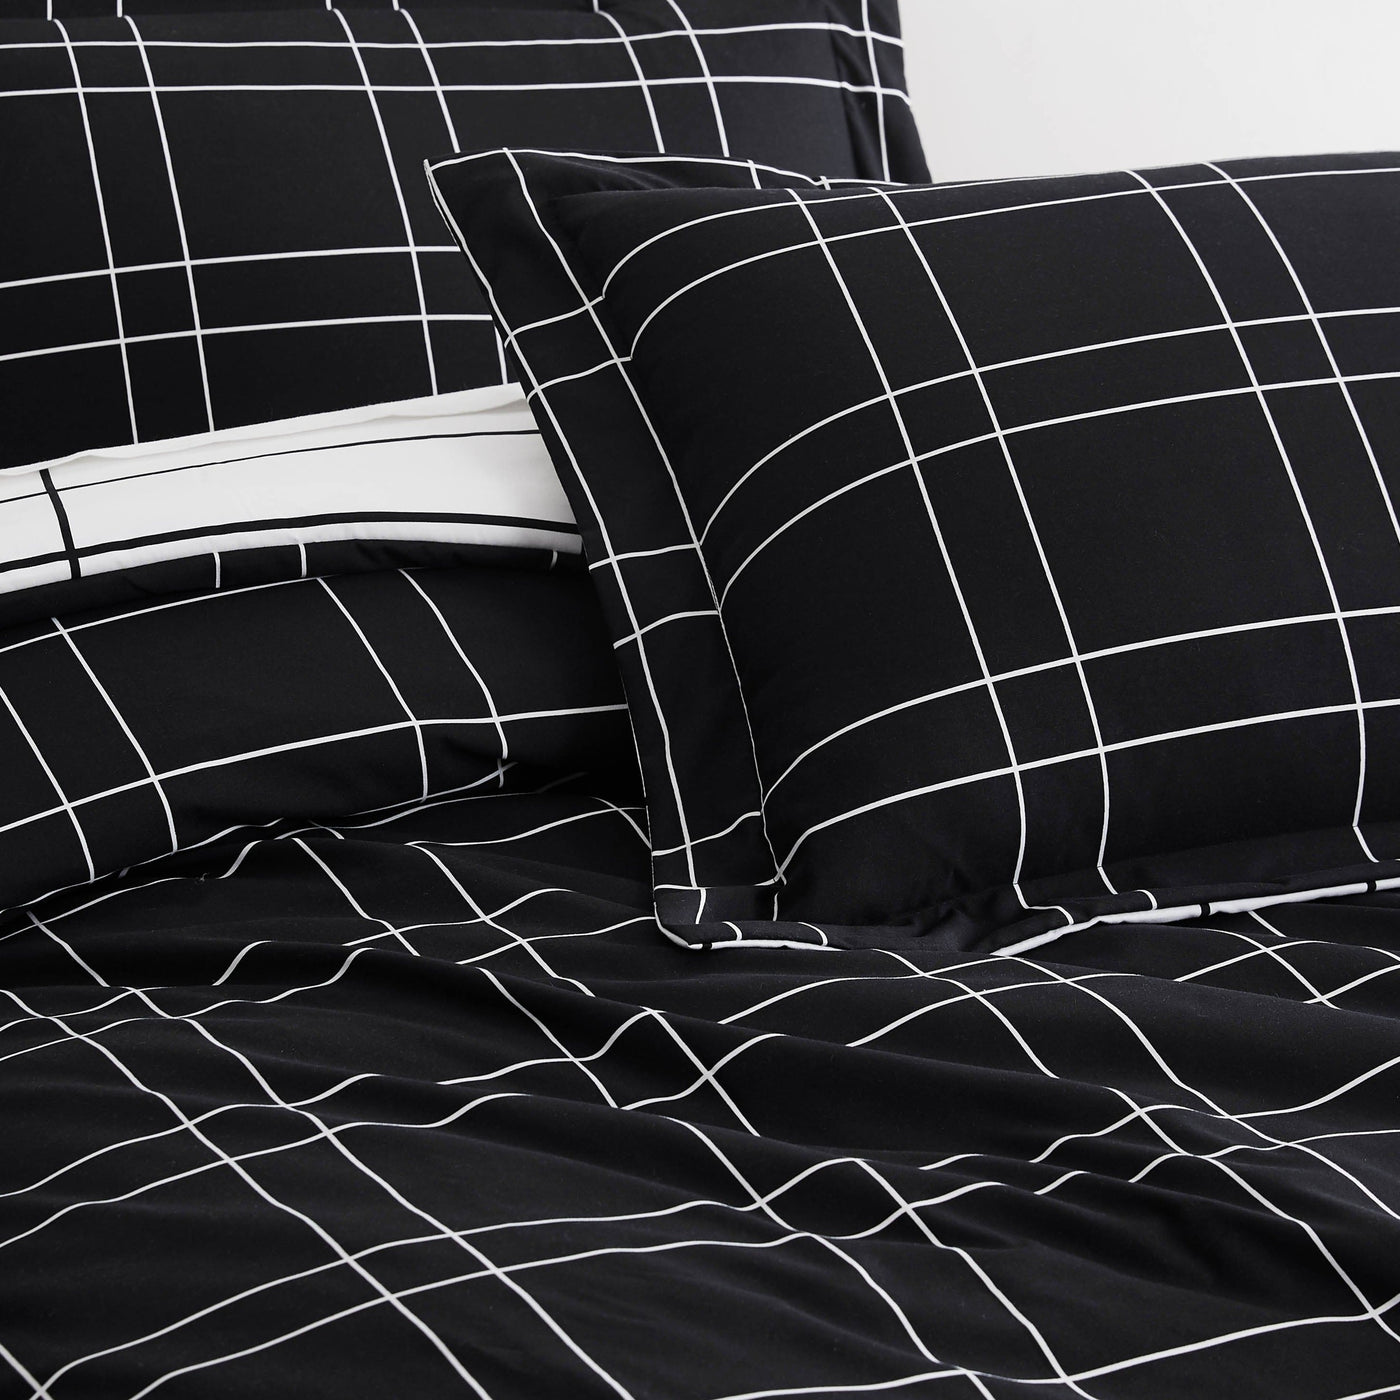 Details and Prints of Urban Grid Reversible Comforter Set #color_urban-grid-black